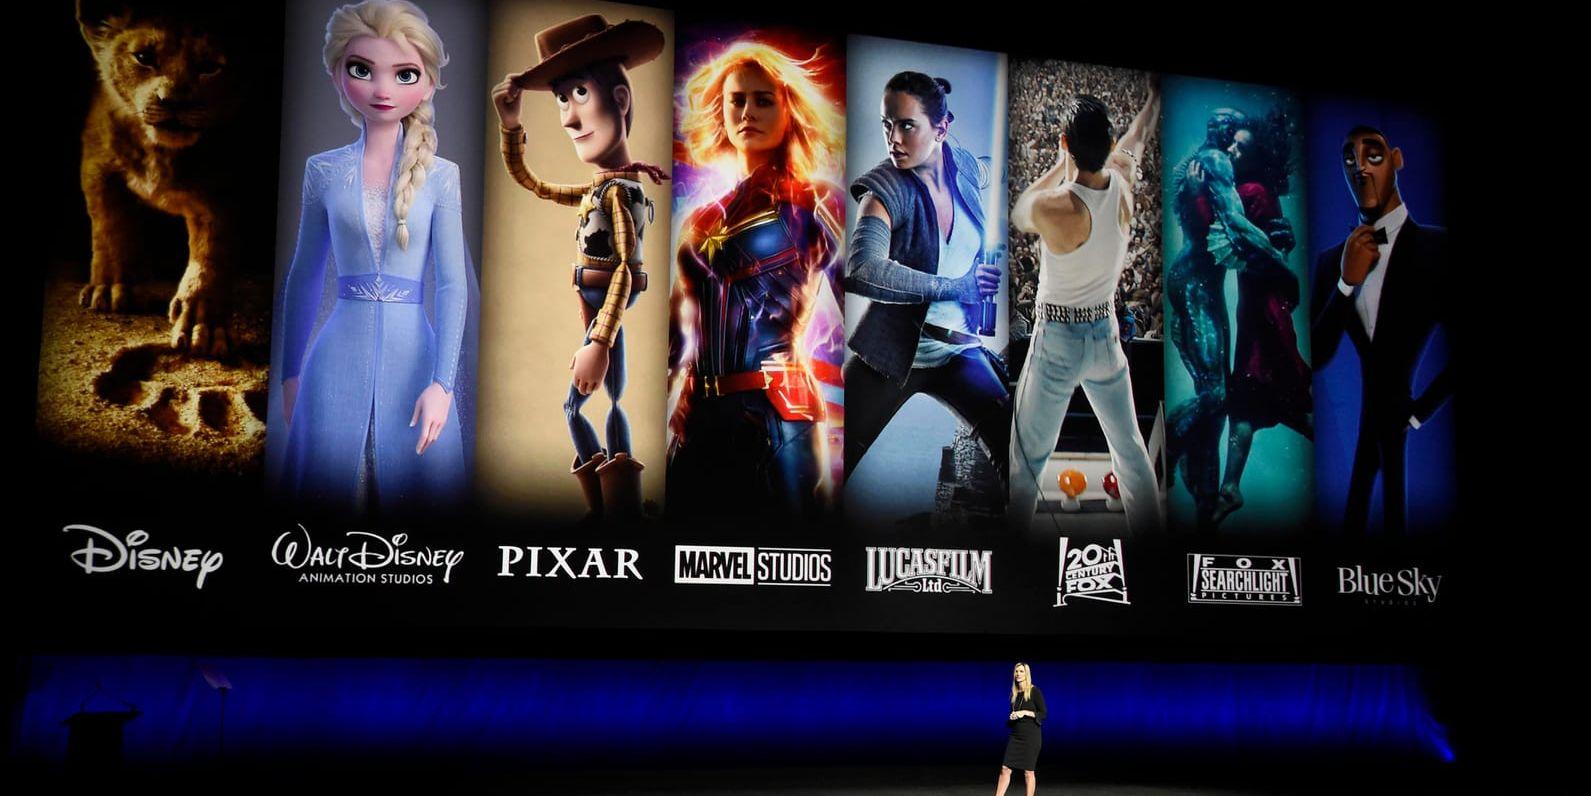 Några av de filmer och karaktärer som kommer finnas i strömningstjänsten Disney+. Bilden är från en presentation av Disneys och Fox nya gemensamma distribution tidigare i april.